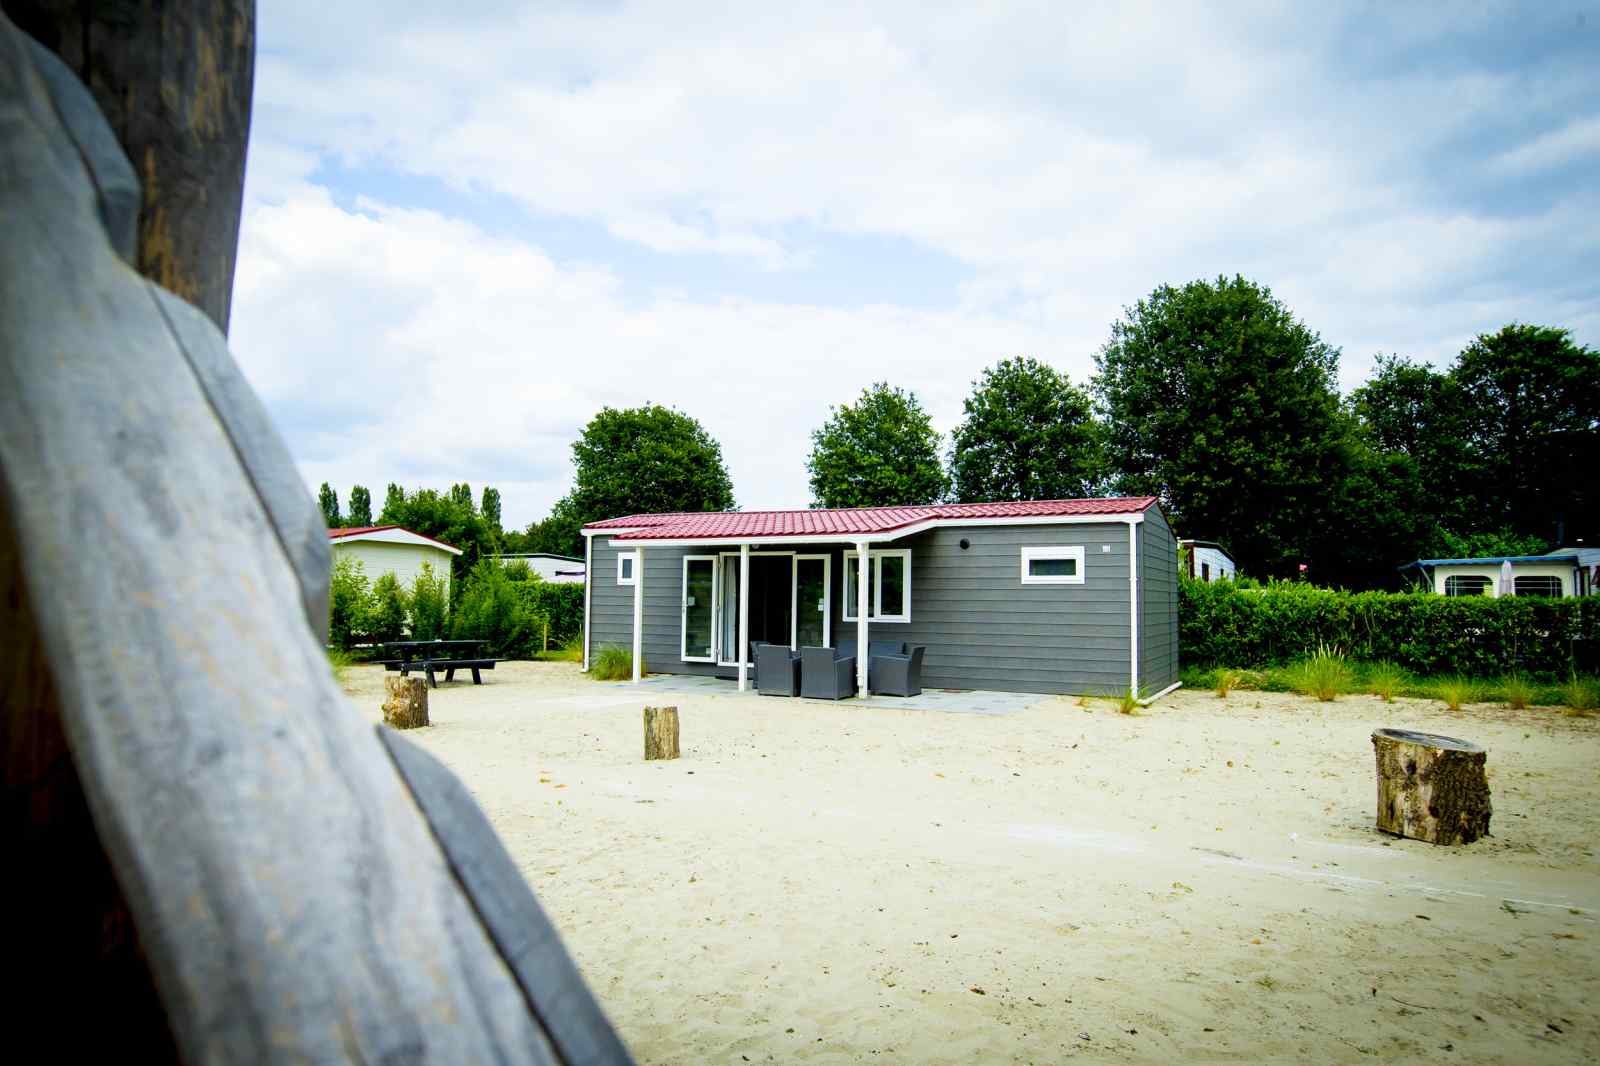 Mooi 6 persoons chalet op een recreatiepark in Noord Brabant - Nederland - Europa - Udenhout